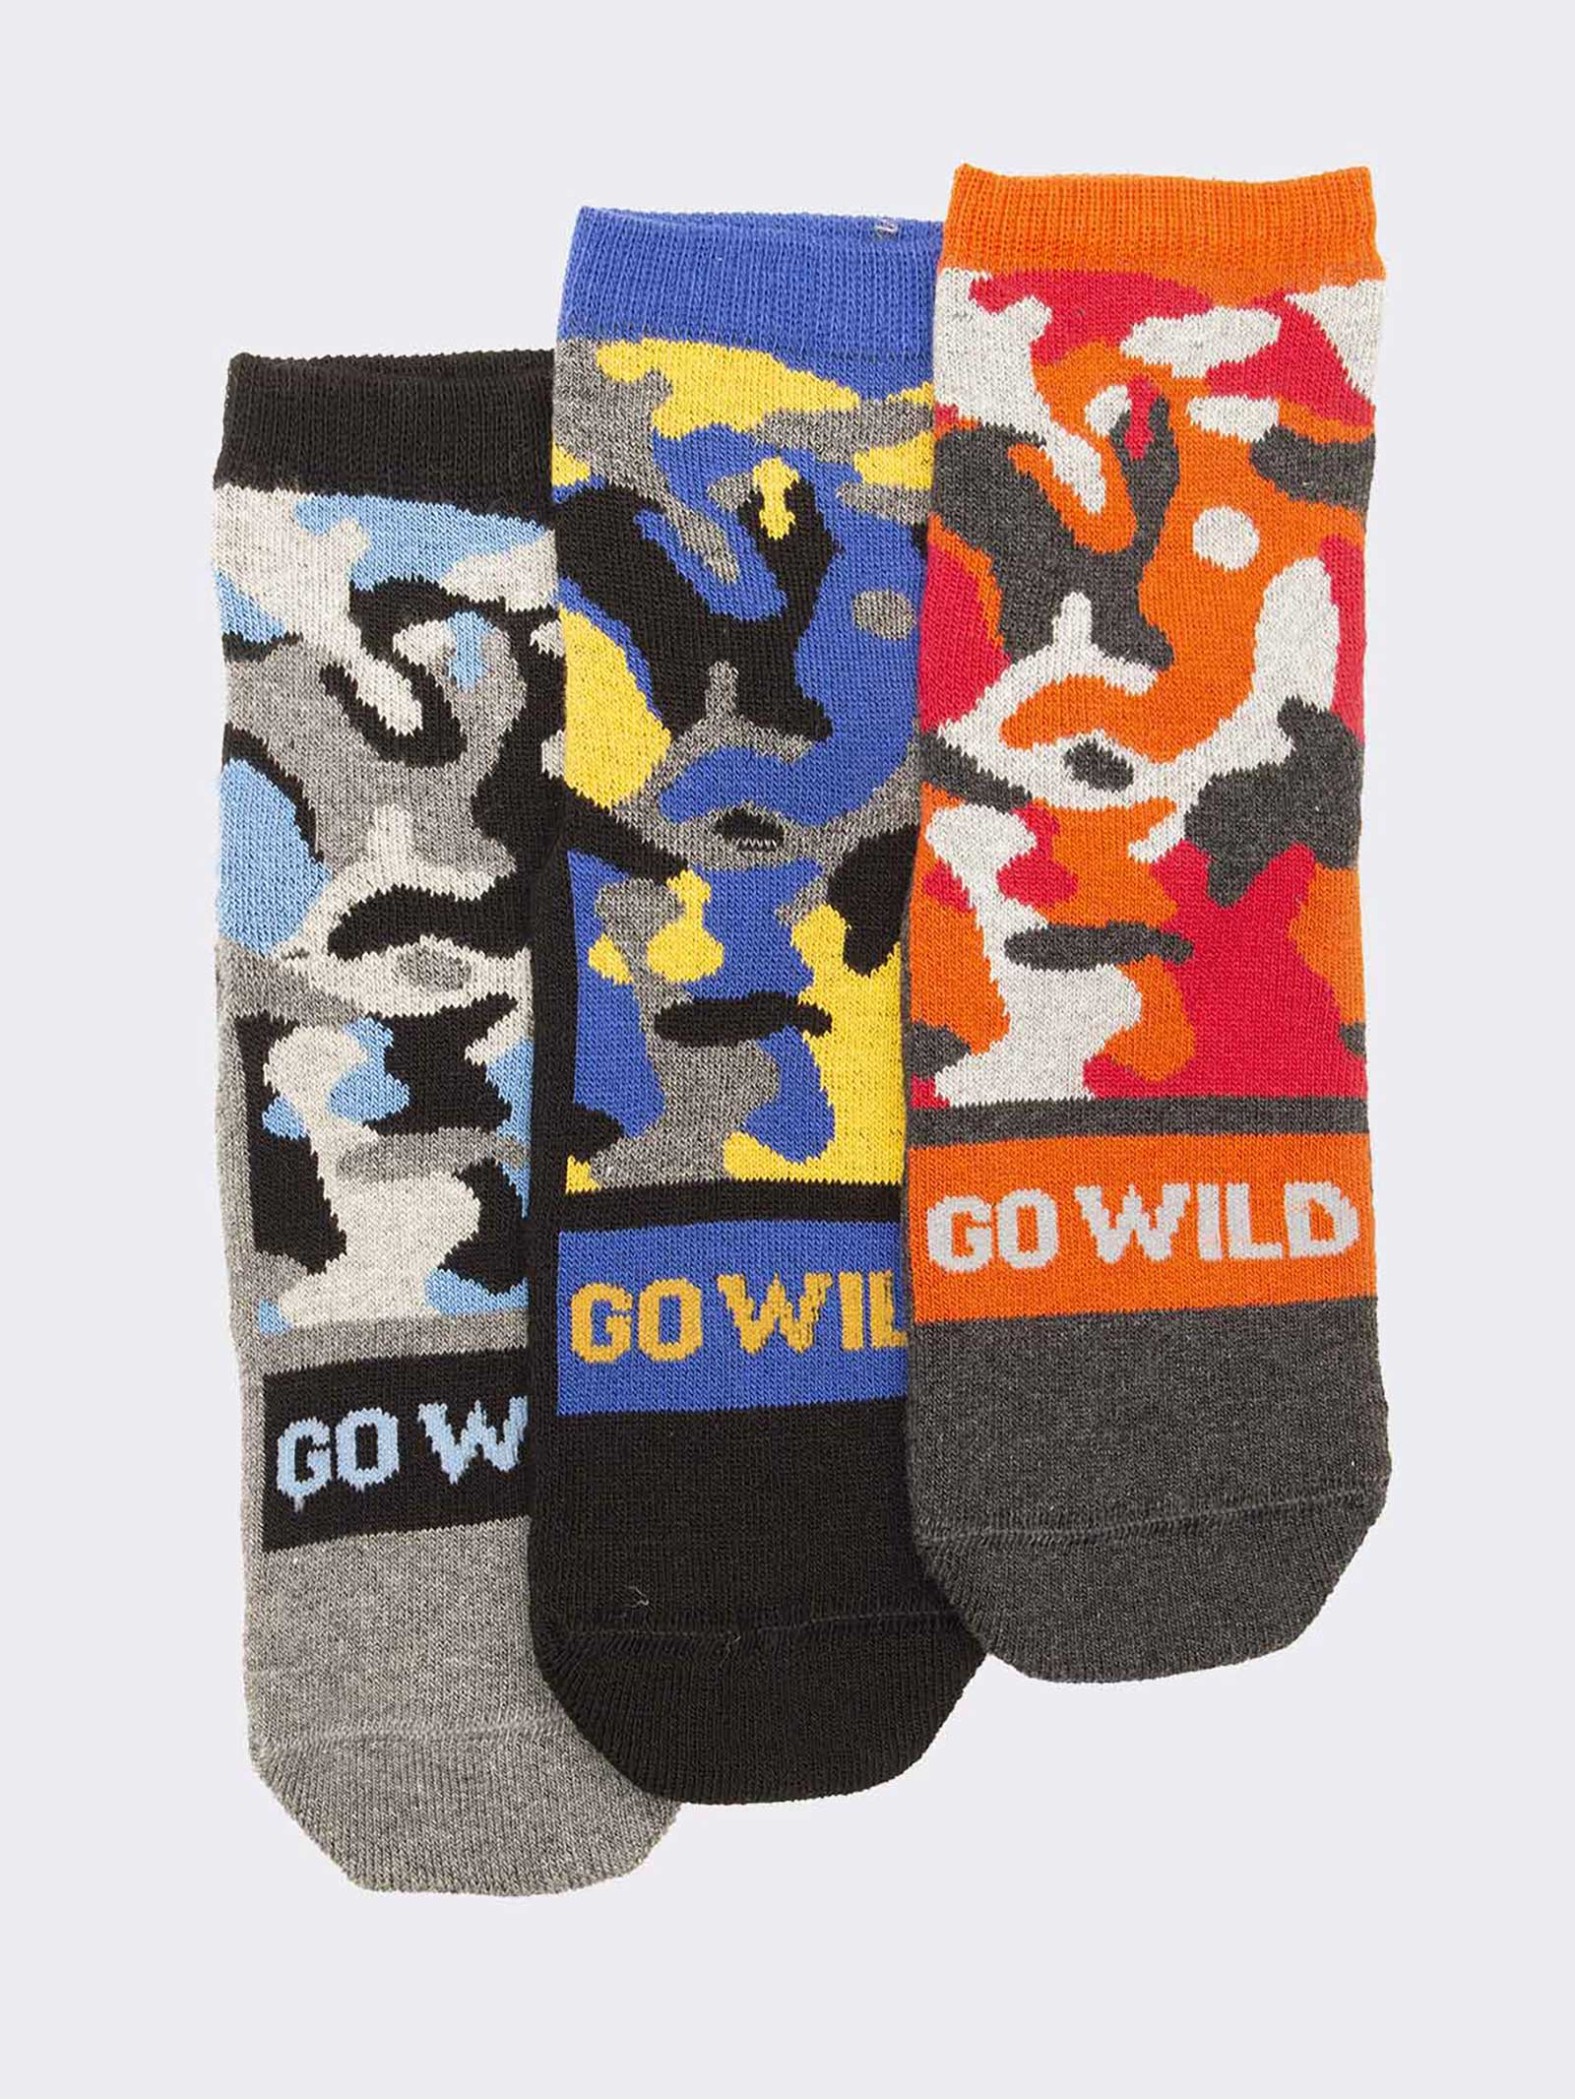 Trio of military patterned children's socks